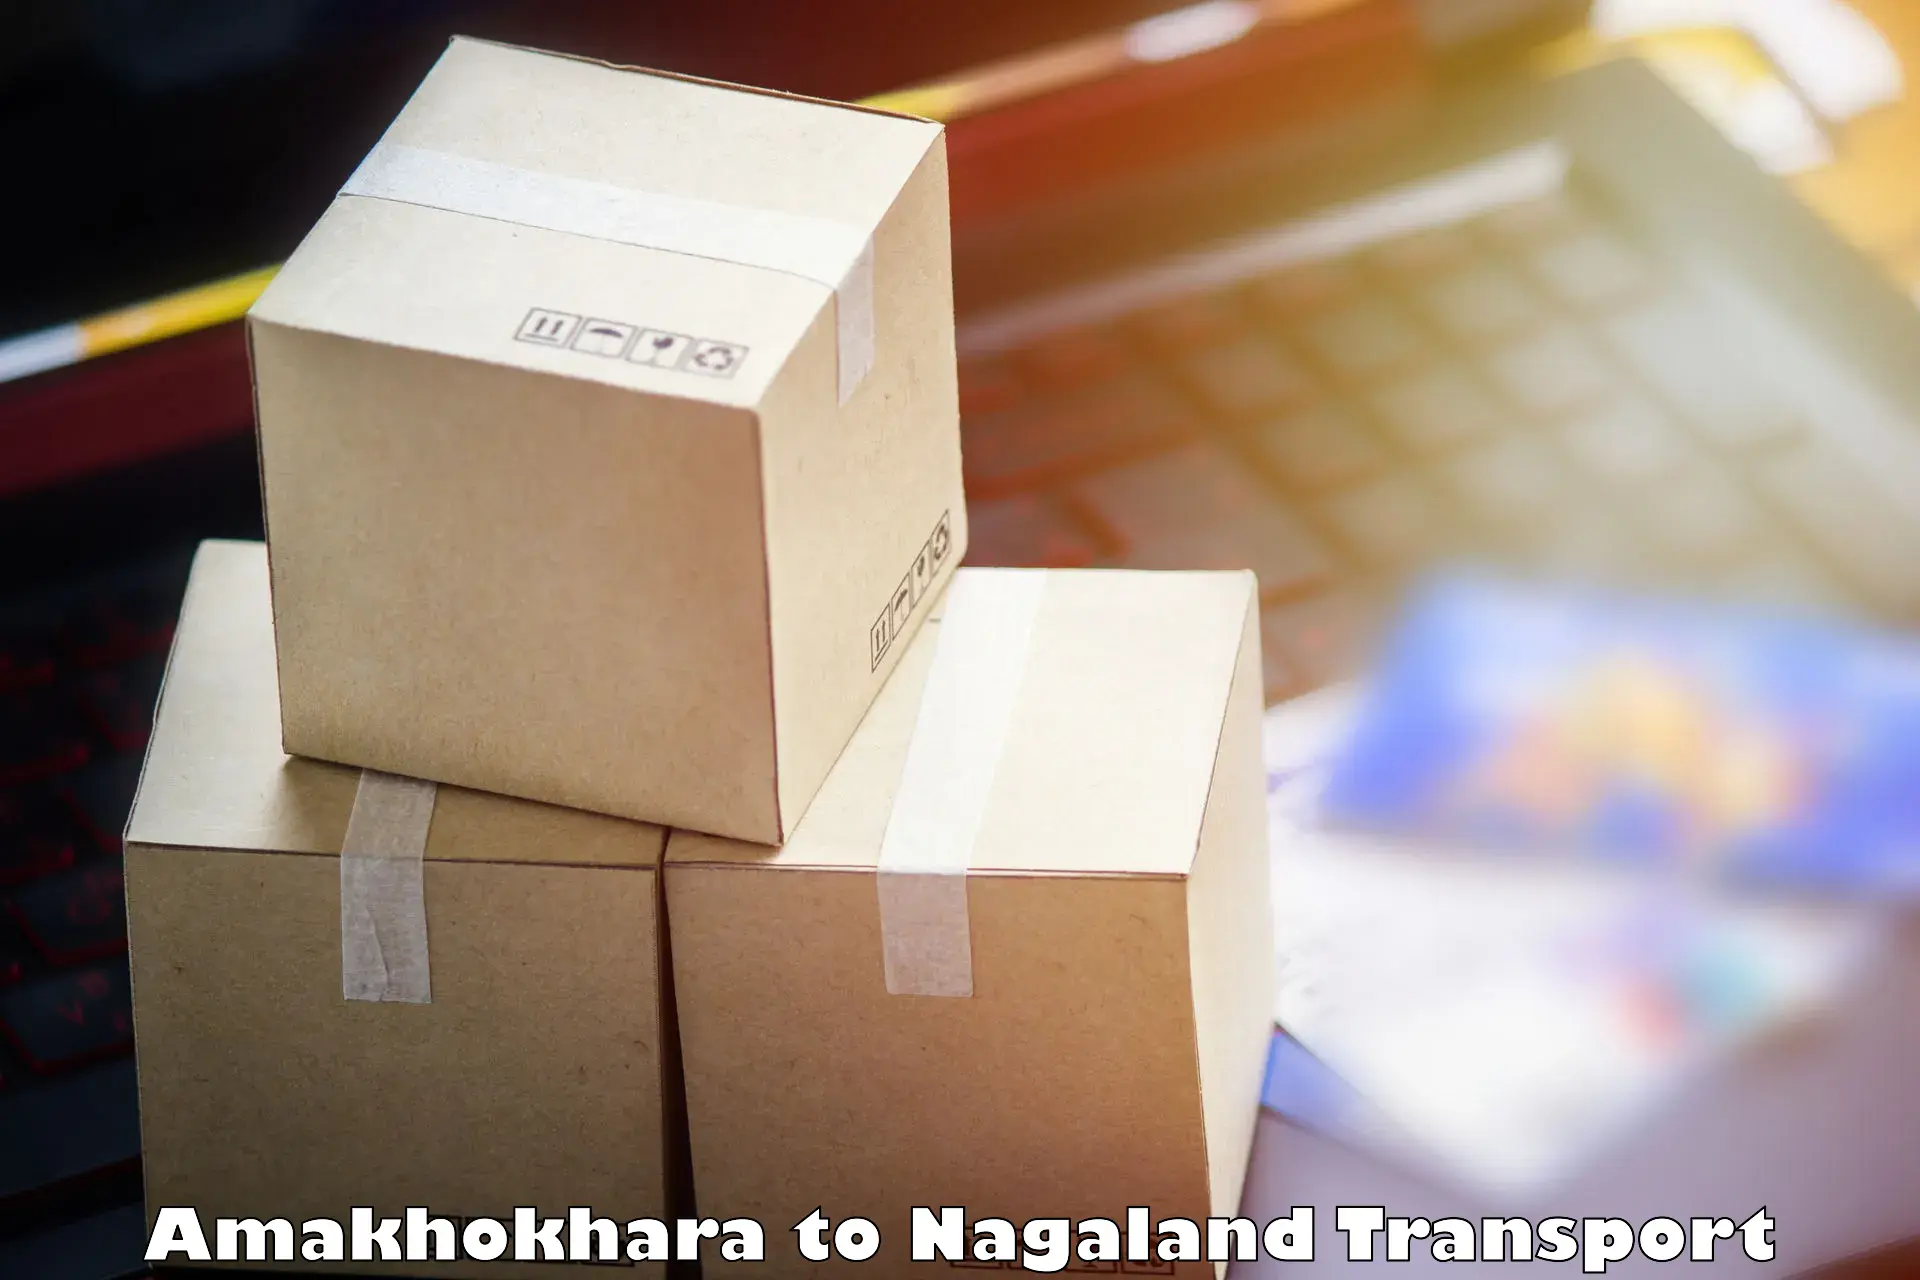 Cargo transport services Amakhokhara to Longleng